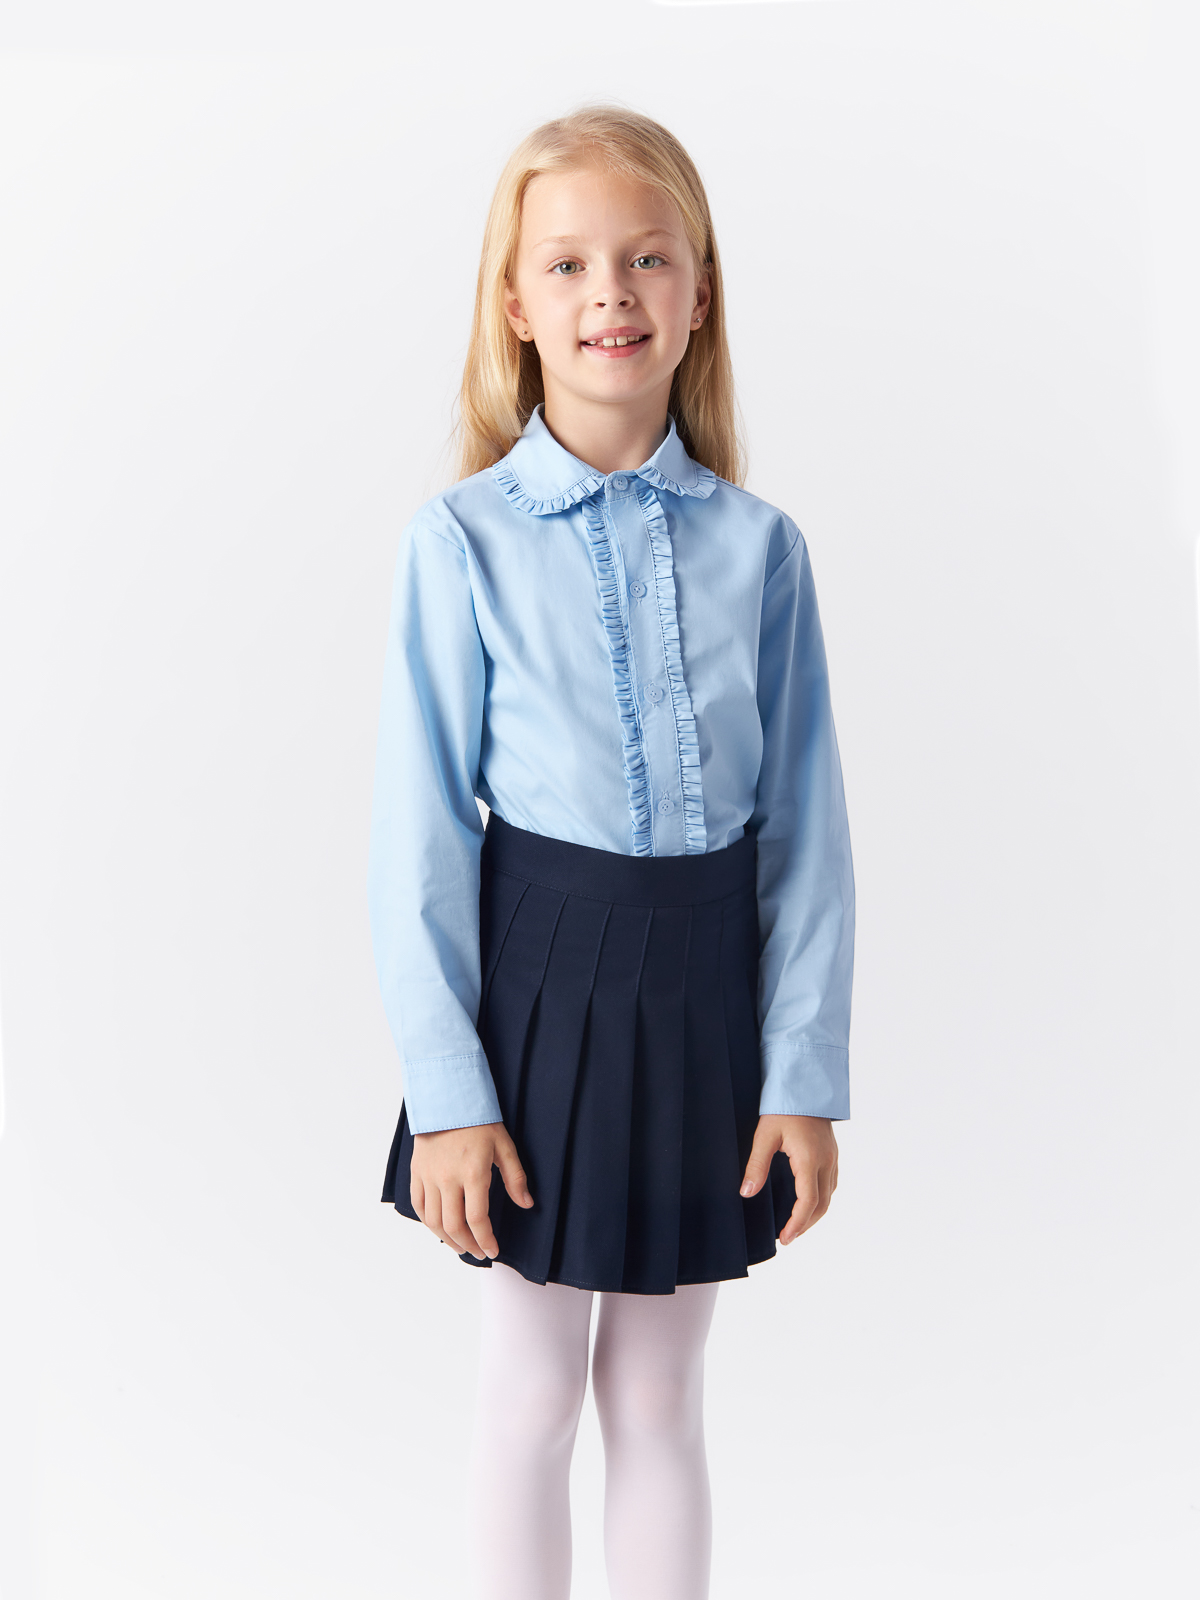 Блузка Yiwu Xflot Supply Chain детская, BS-2blue, размер 160 см блузка трикотажная школьная белая button blue 152